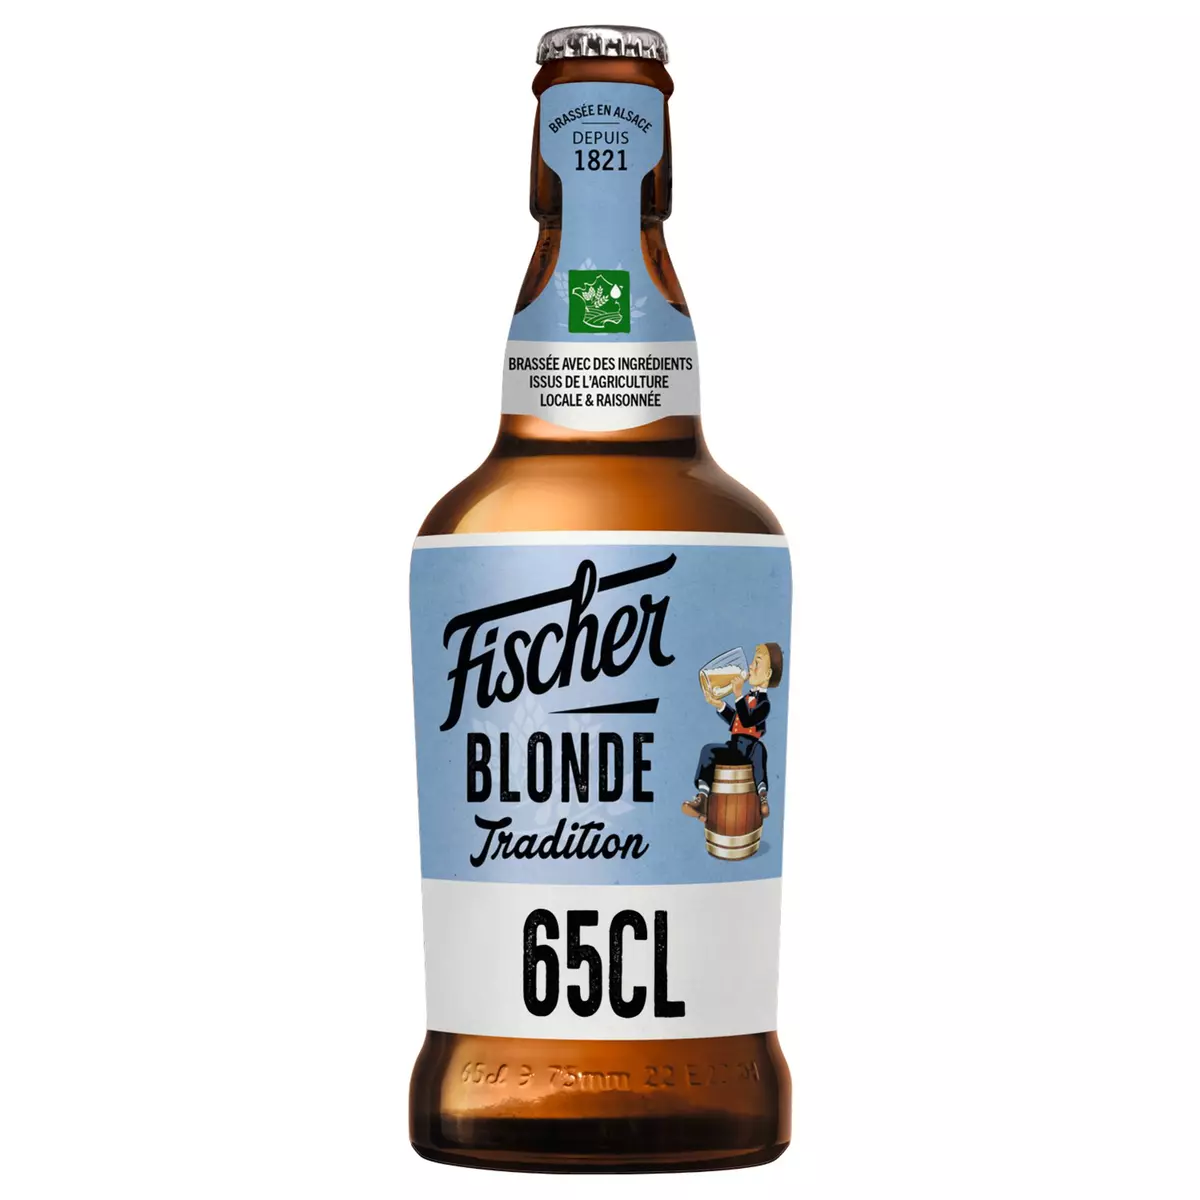 FISCHER Bière blonde tradition d'Alsace 6% verre non consigné 65cl